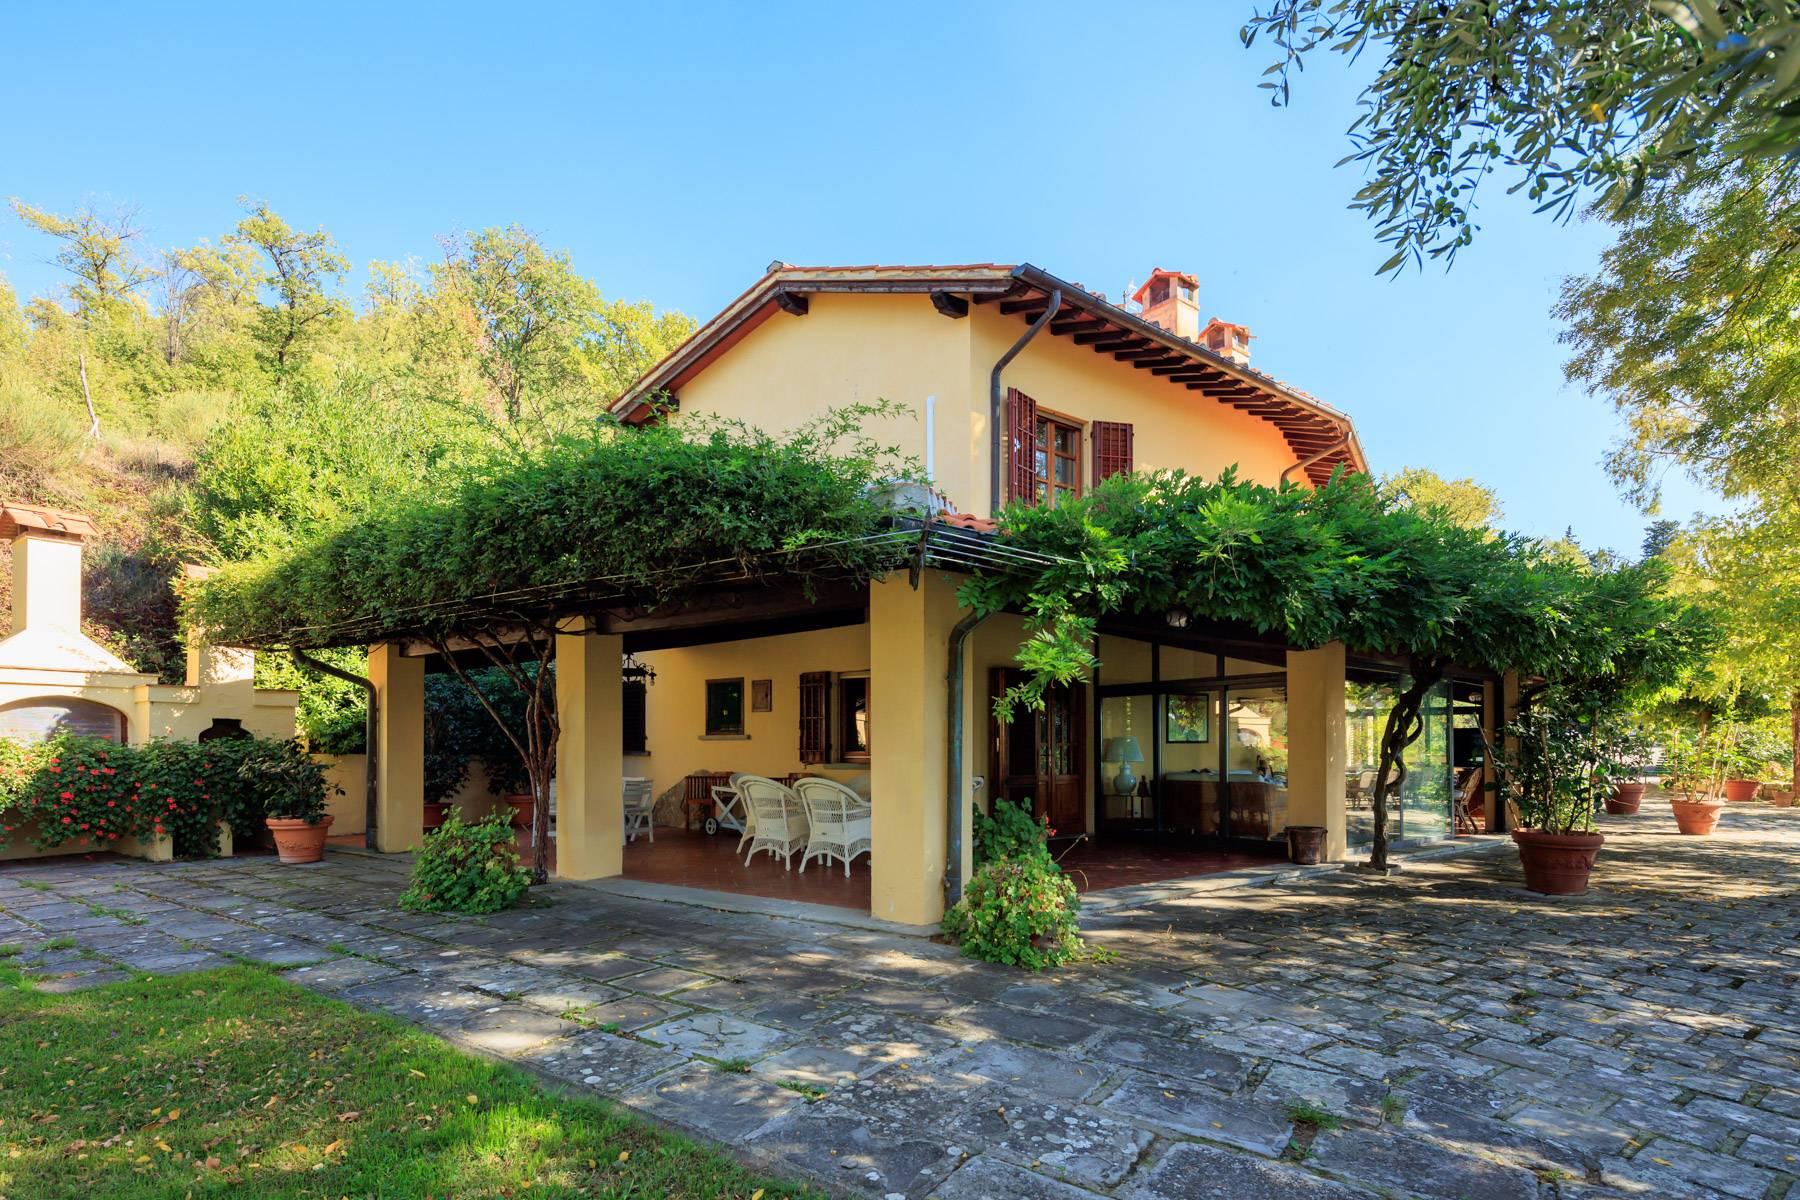 Casale in stile Toscano con 30 ettari di terreno - 28